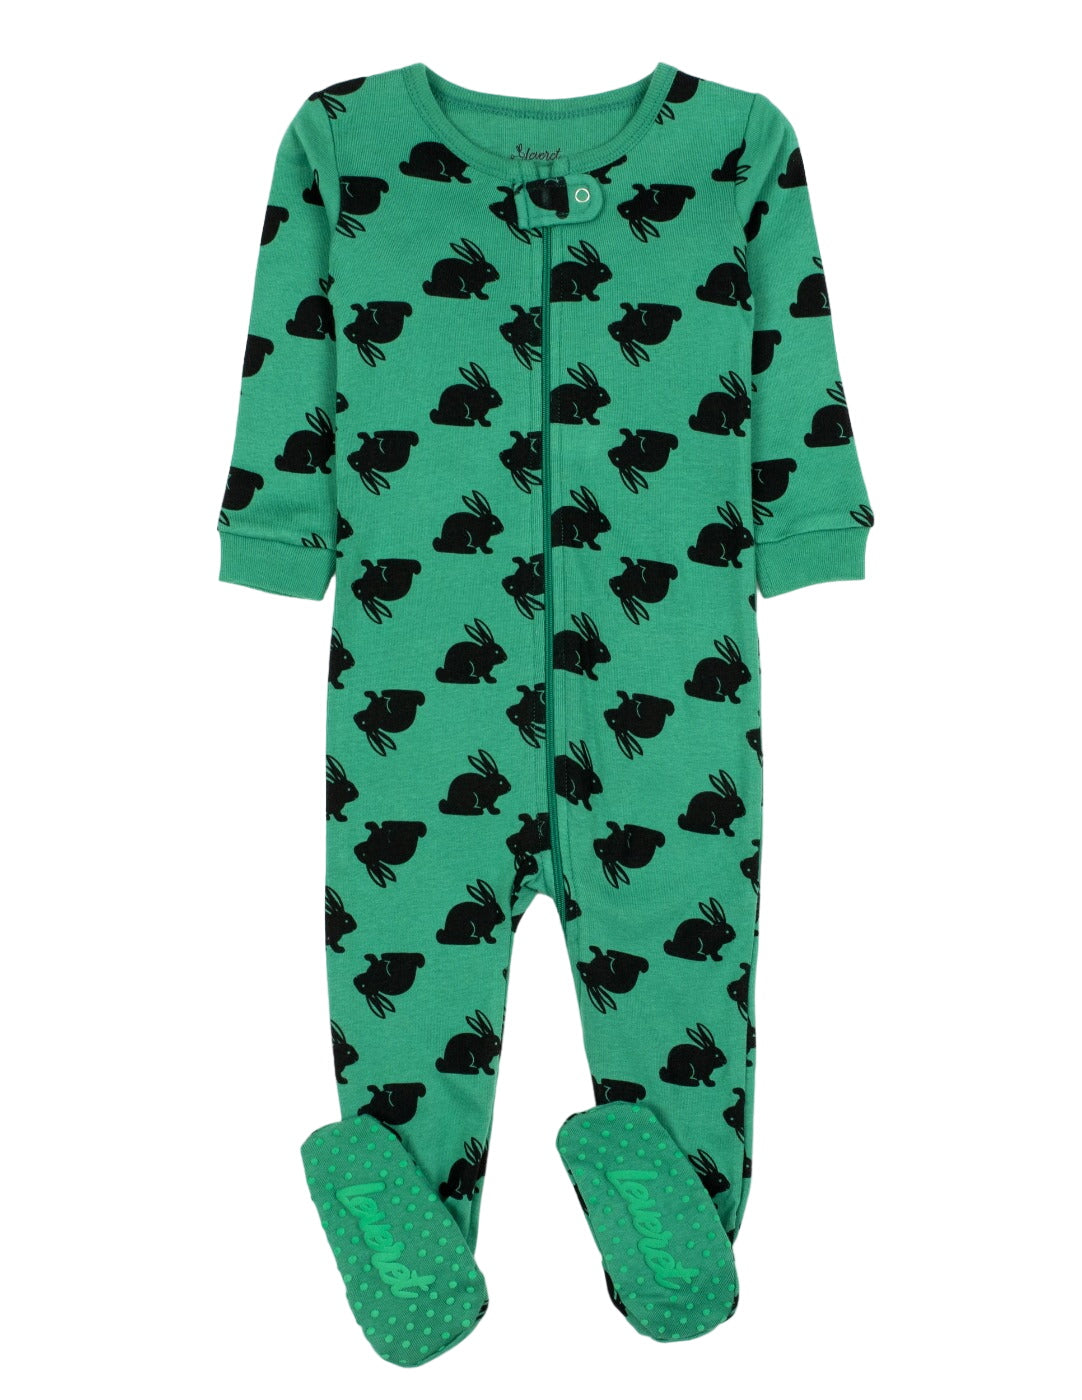 Baby Footed Green Bunny Pajamas